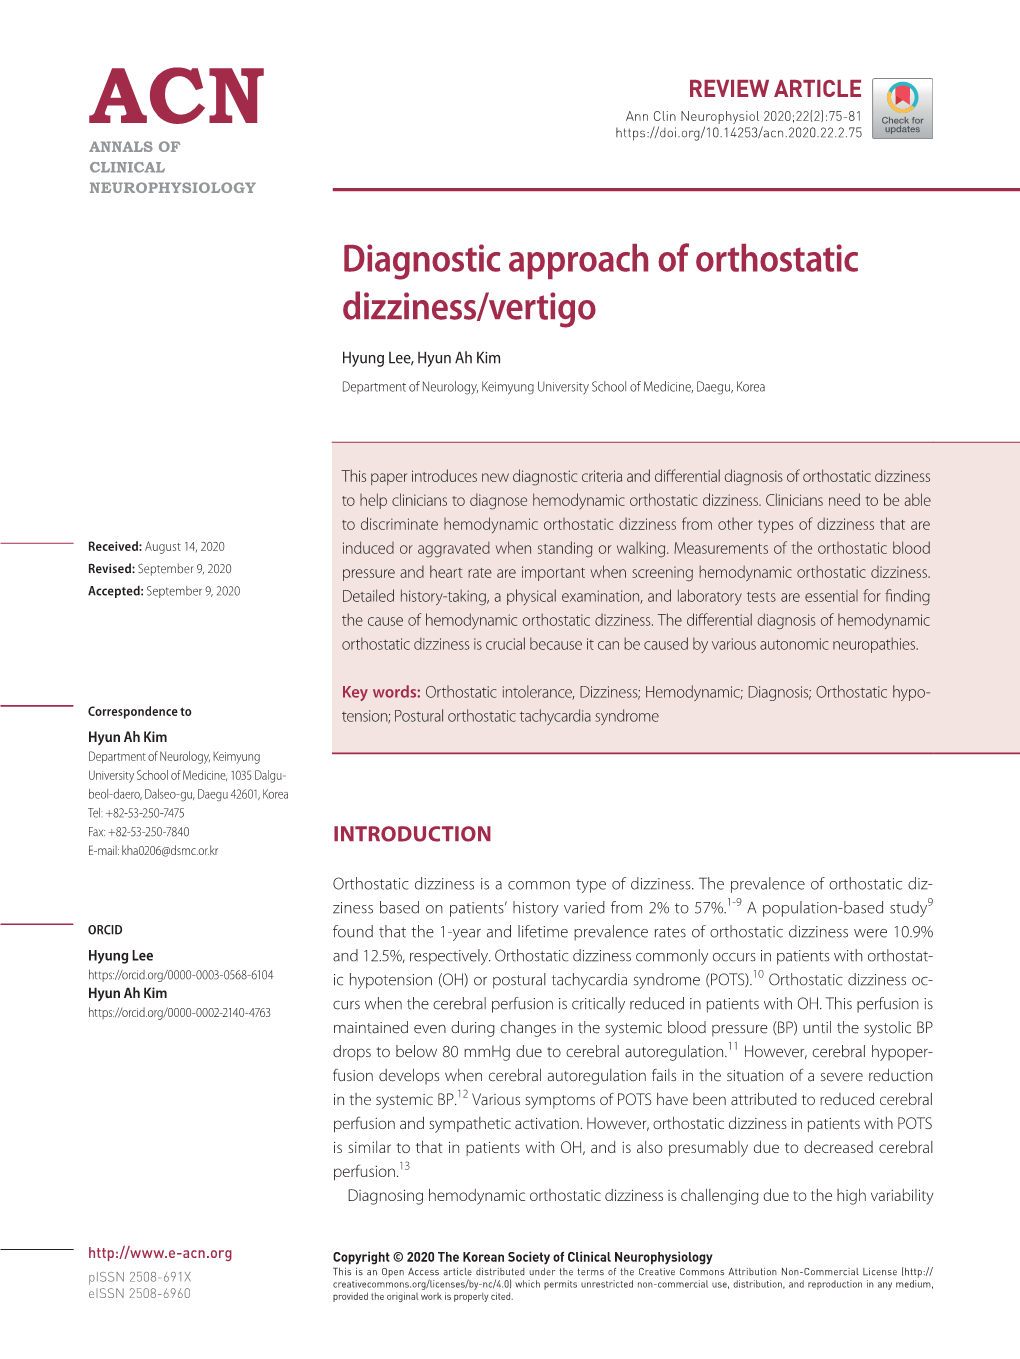 Diagnostic Approach of Orthostatic Dizziness/Vertigo